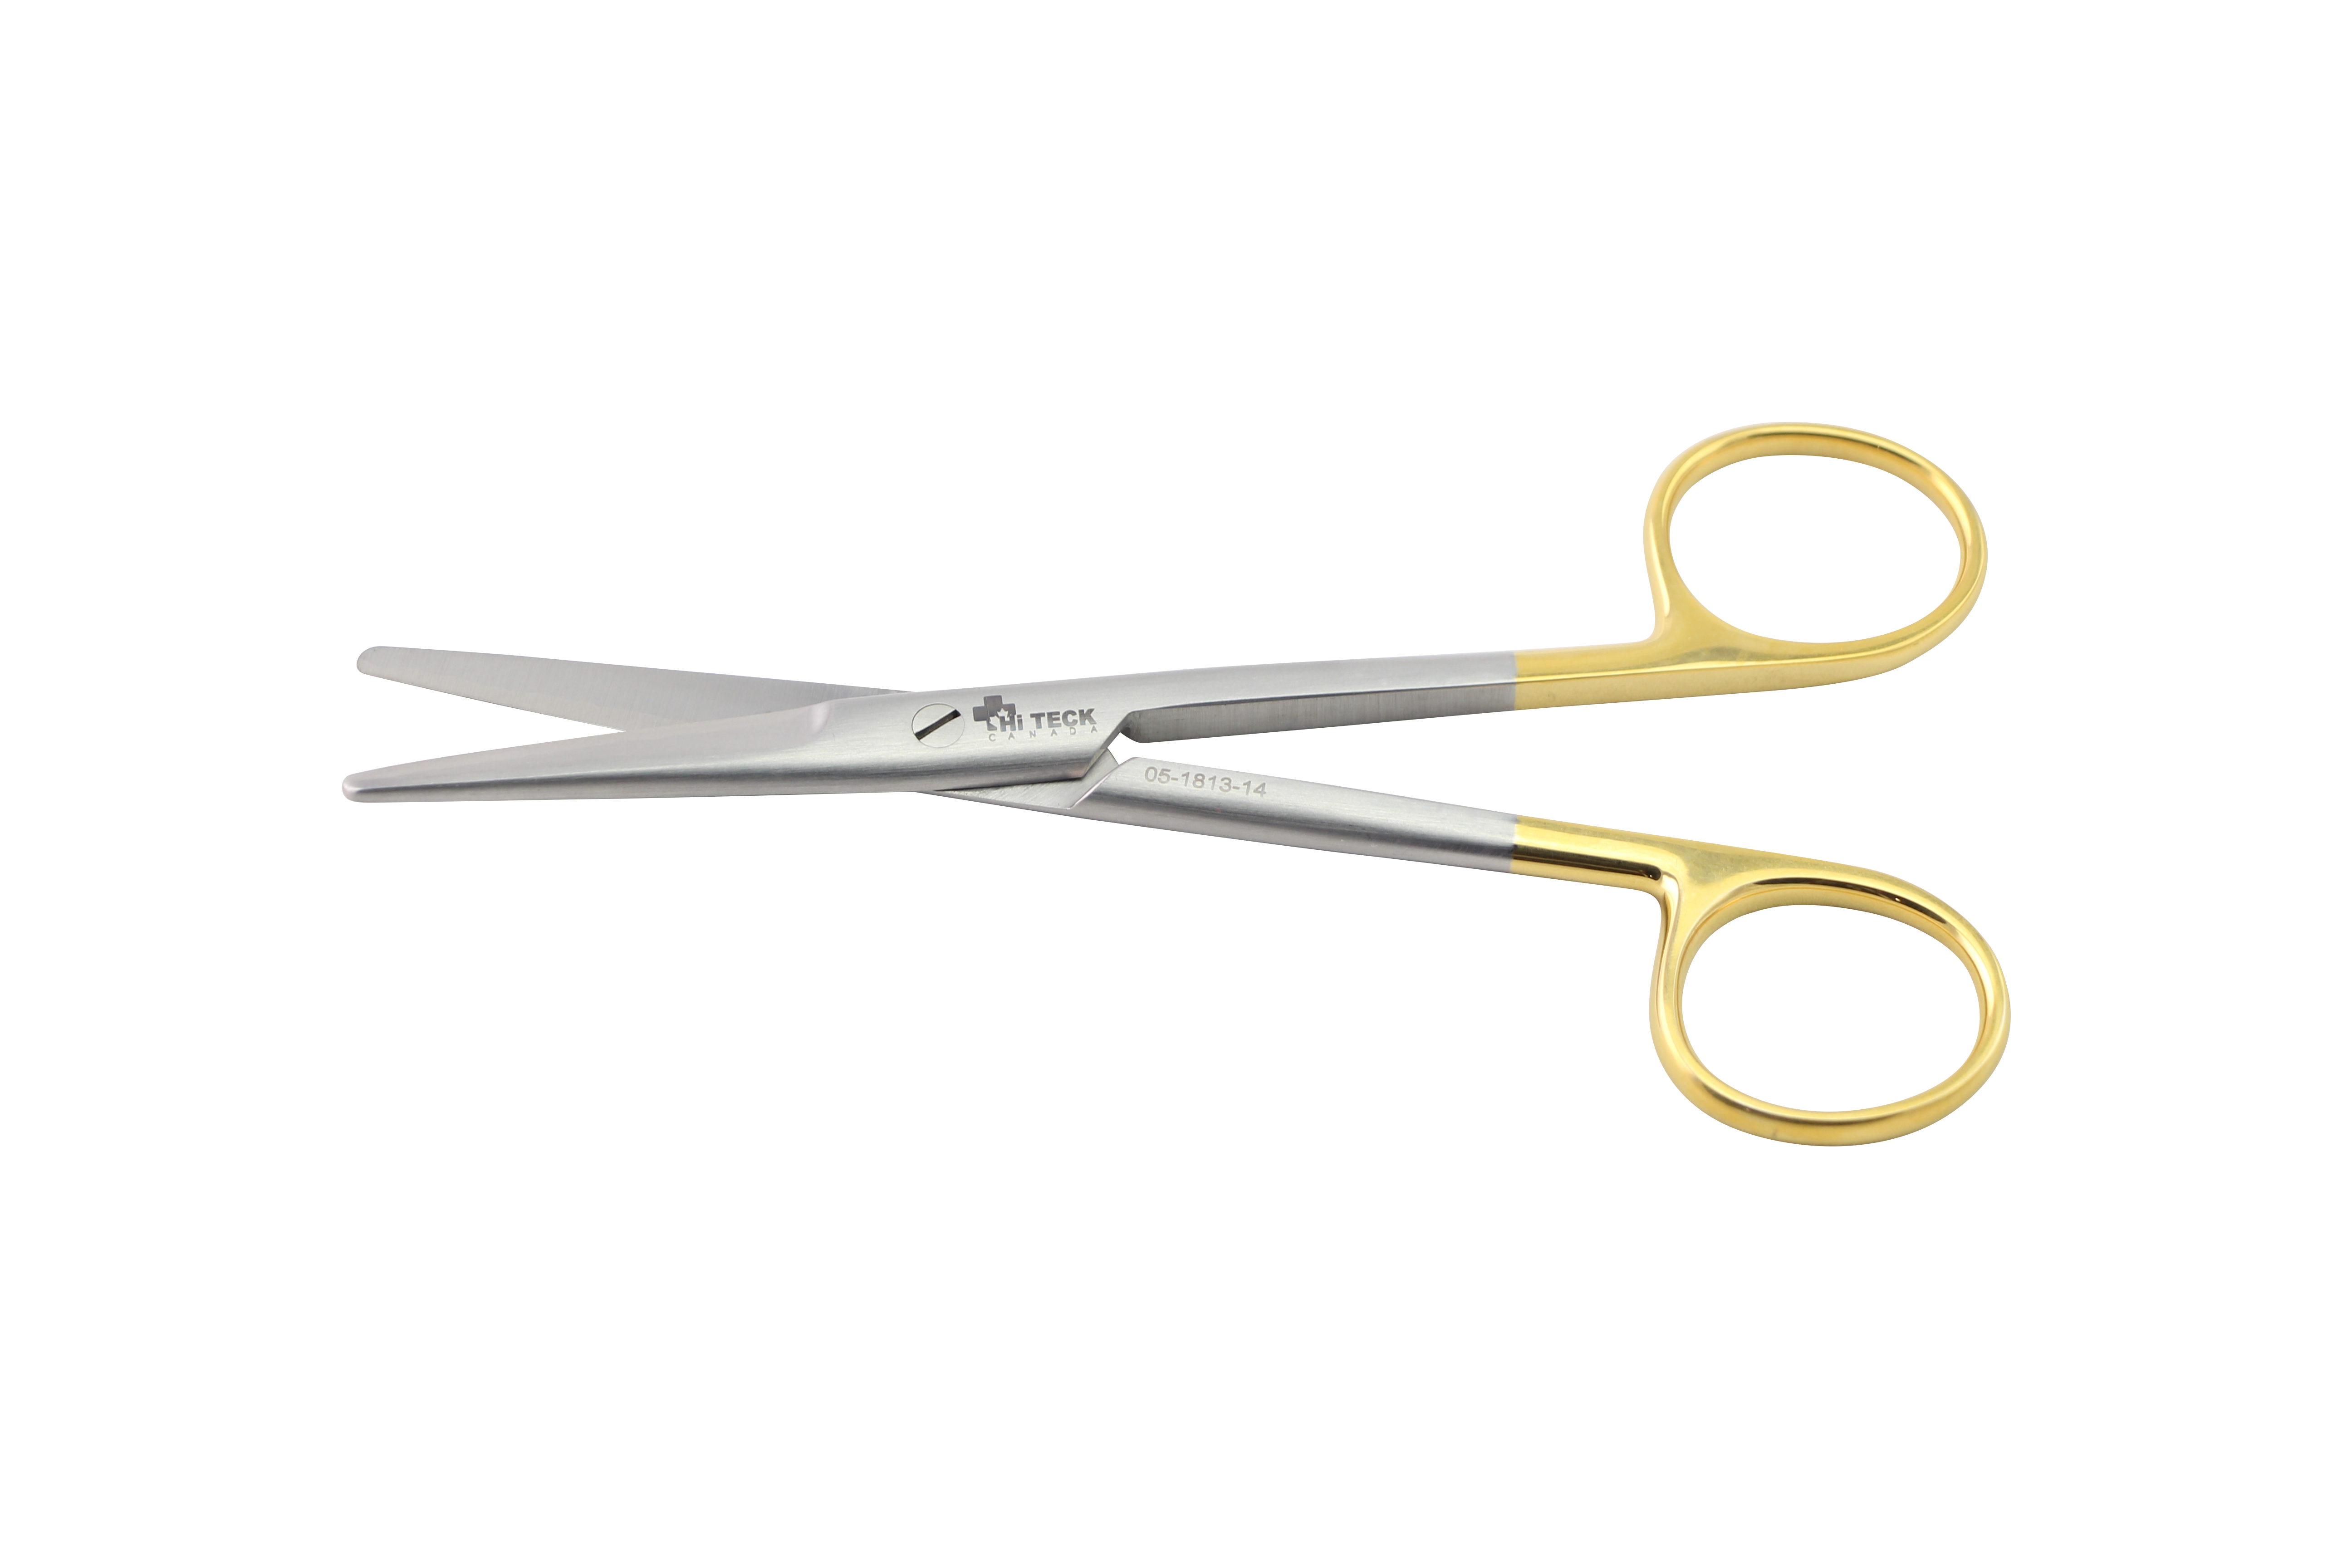 HiTeck Mayo Scissor, Straight, Beveled Blades, Tungsten Carbide, 14.5CM - HiTeck Medical Instruments